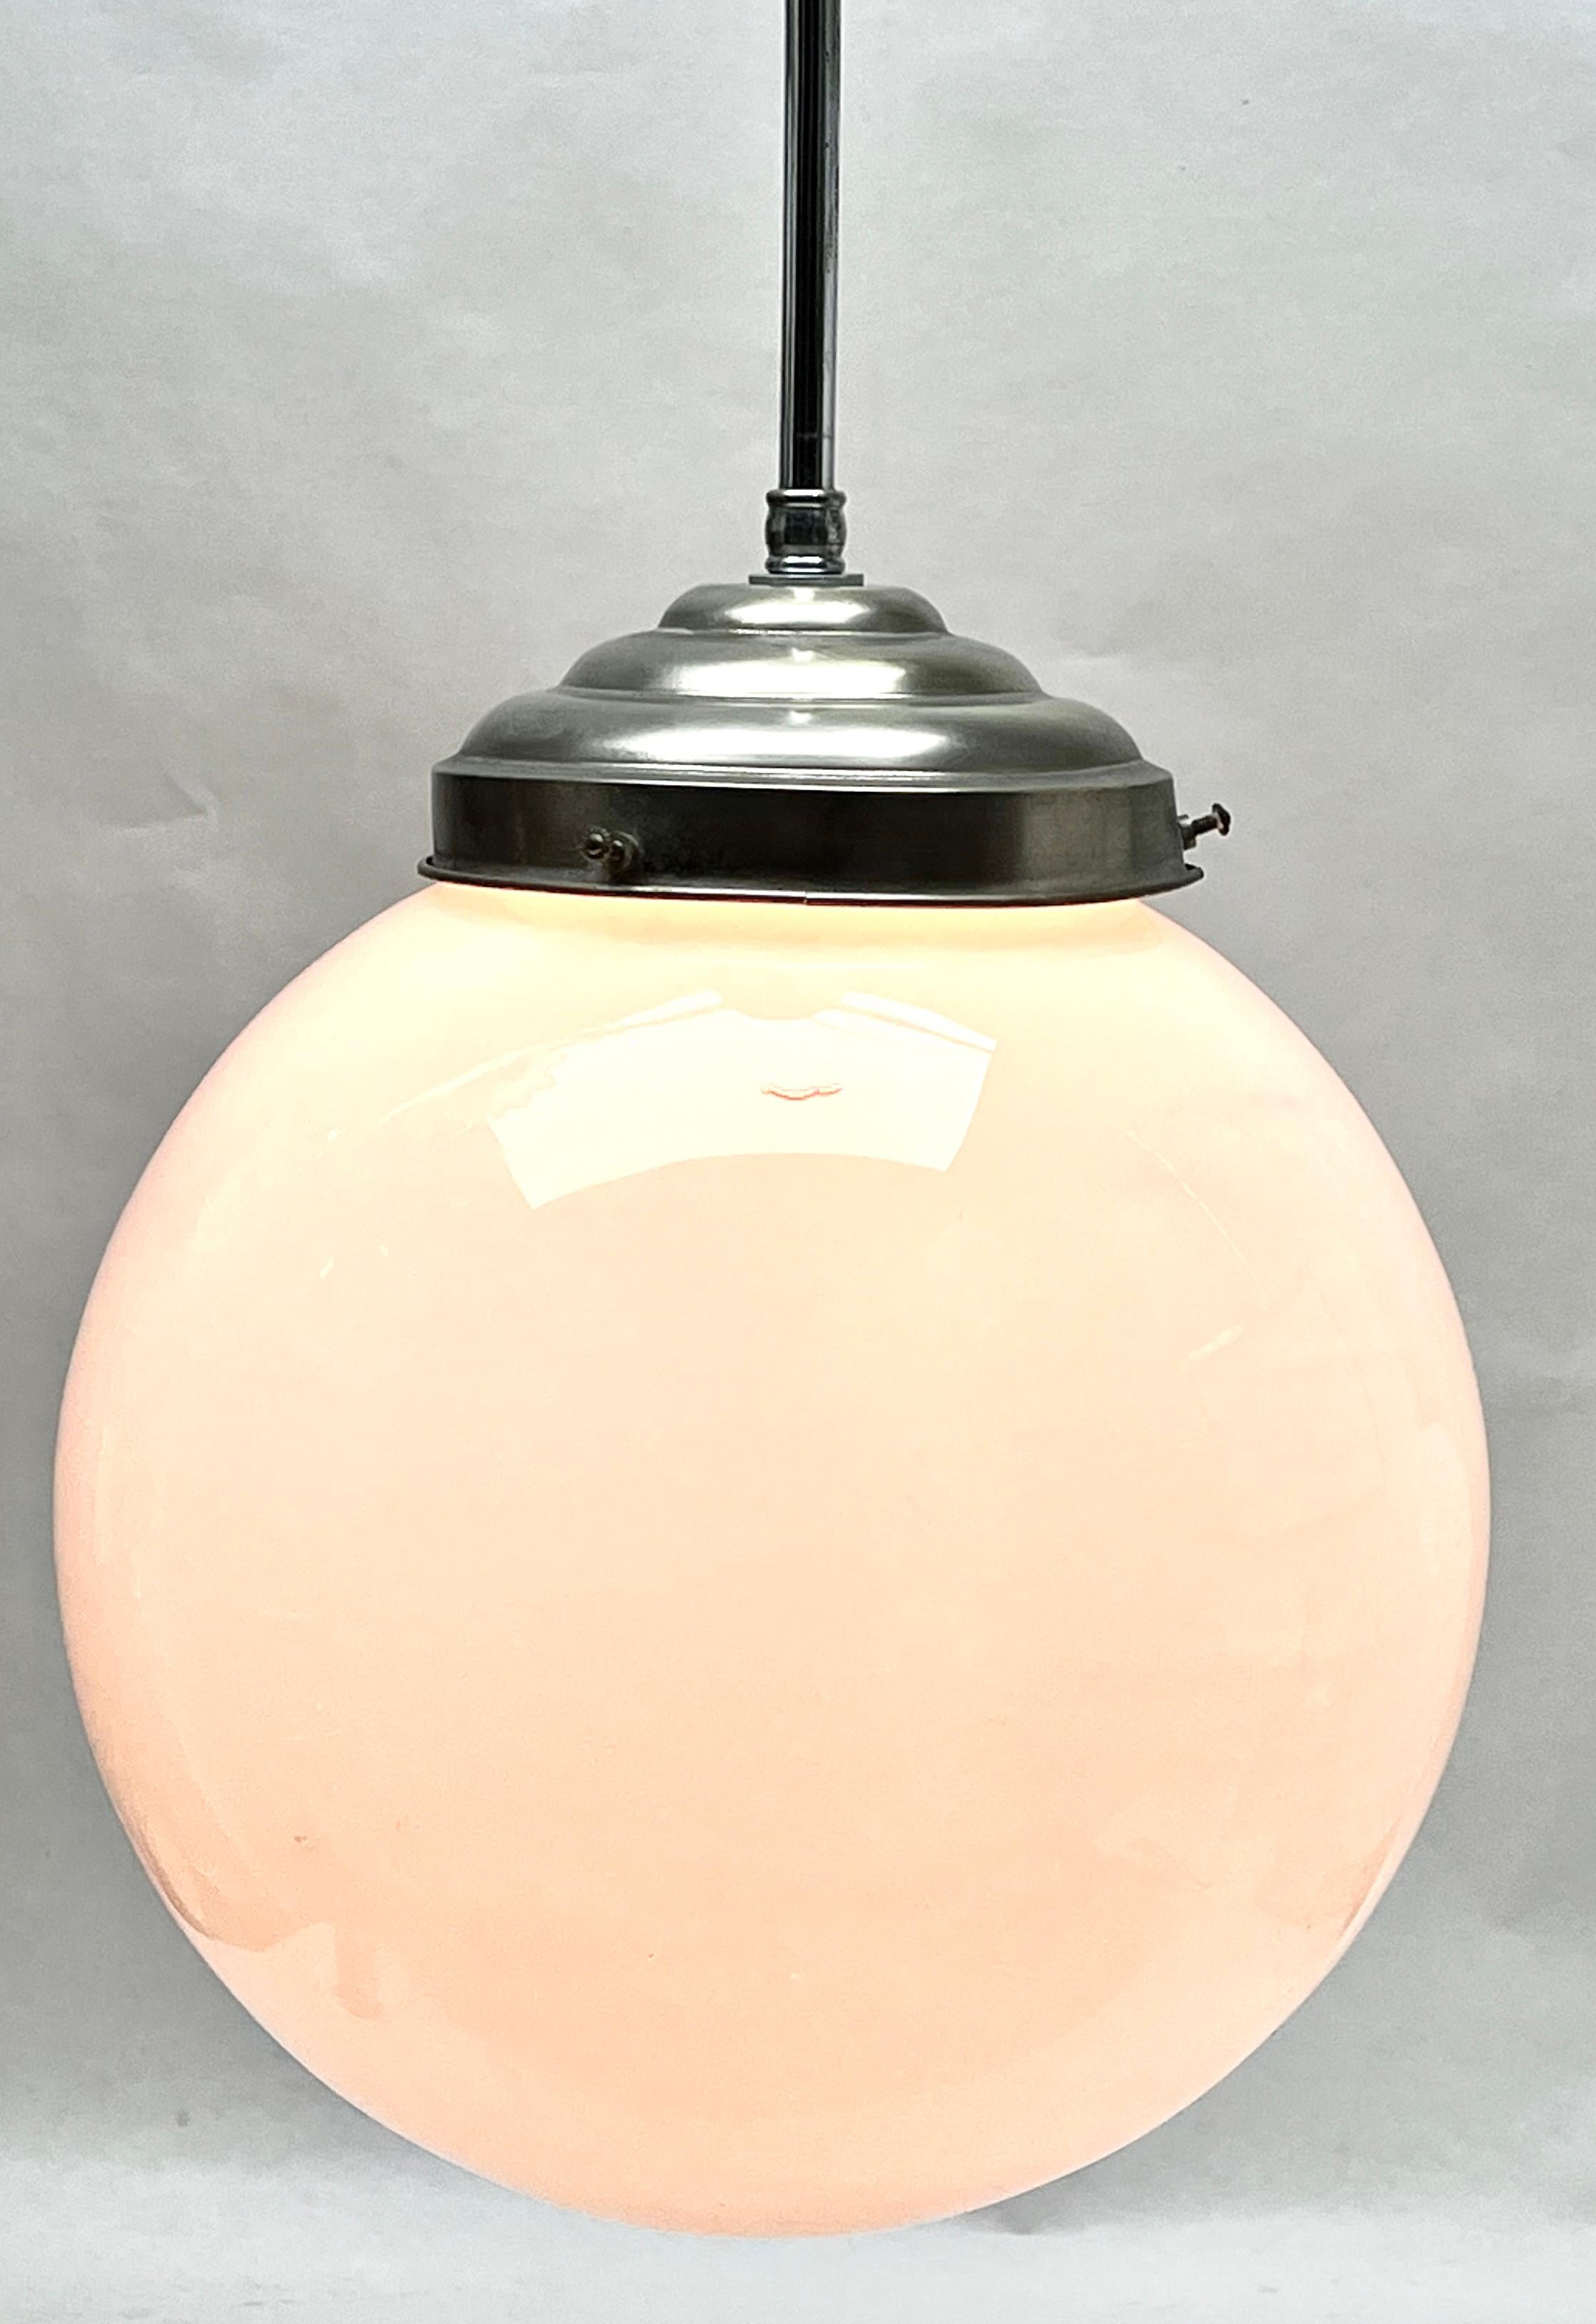 Aus der Reihe der Phillips Company stammt diese zentrale Leuchte auf einem verchromten Stiel. Die Lampe hat eine Halterung auf einer verchromten Platte und hält einen runden, kugelförmigen Schirm aus Opalglas.

In gutem Zustand und voll